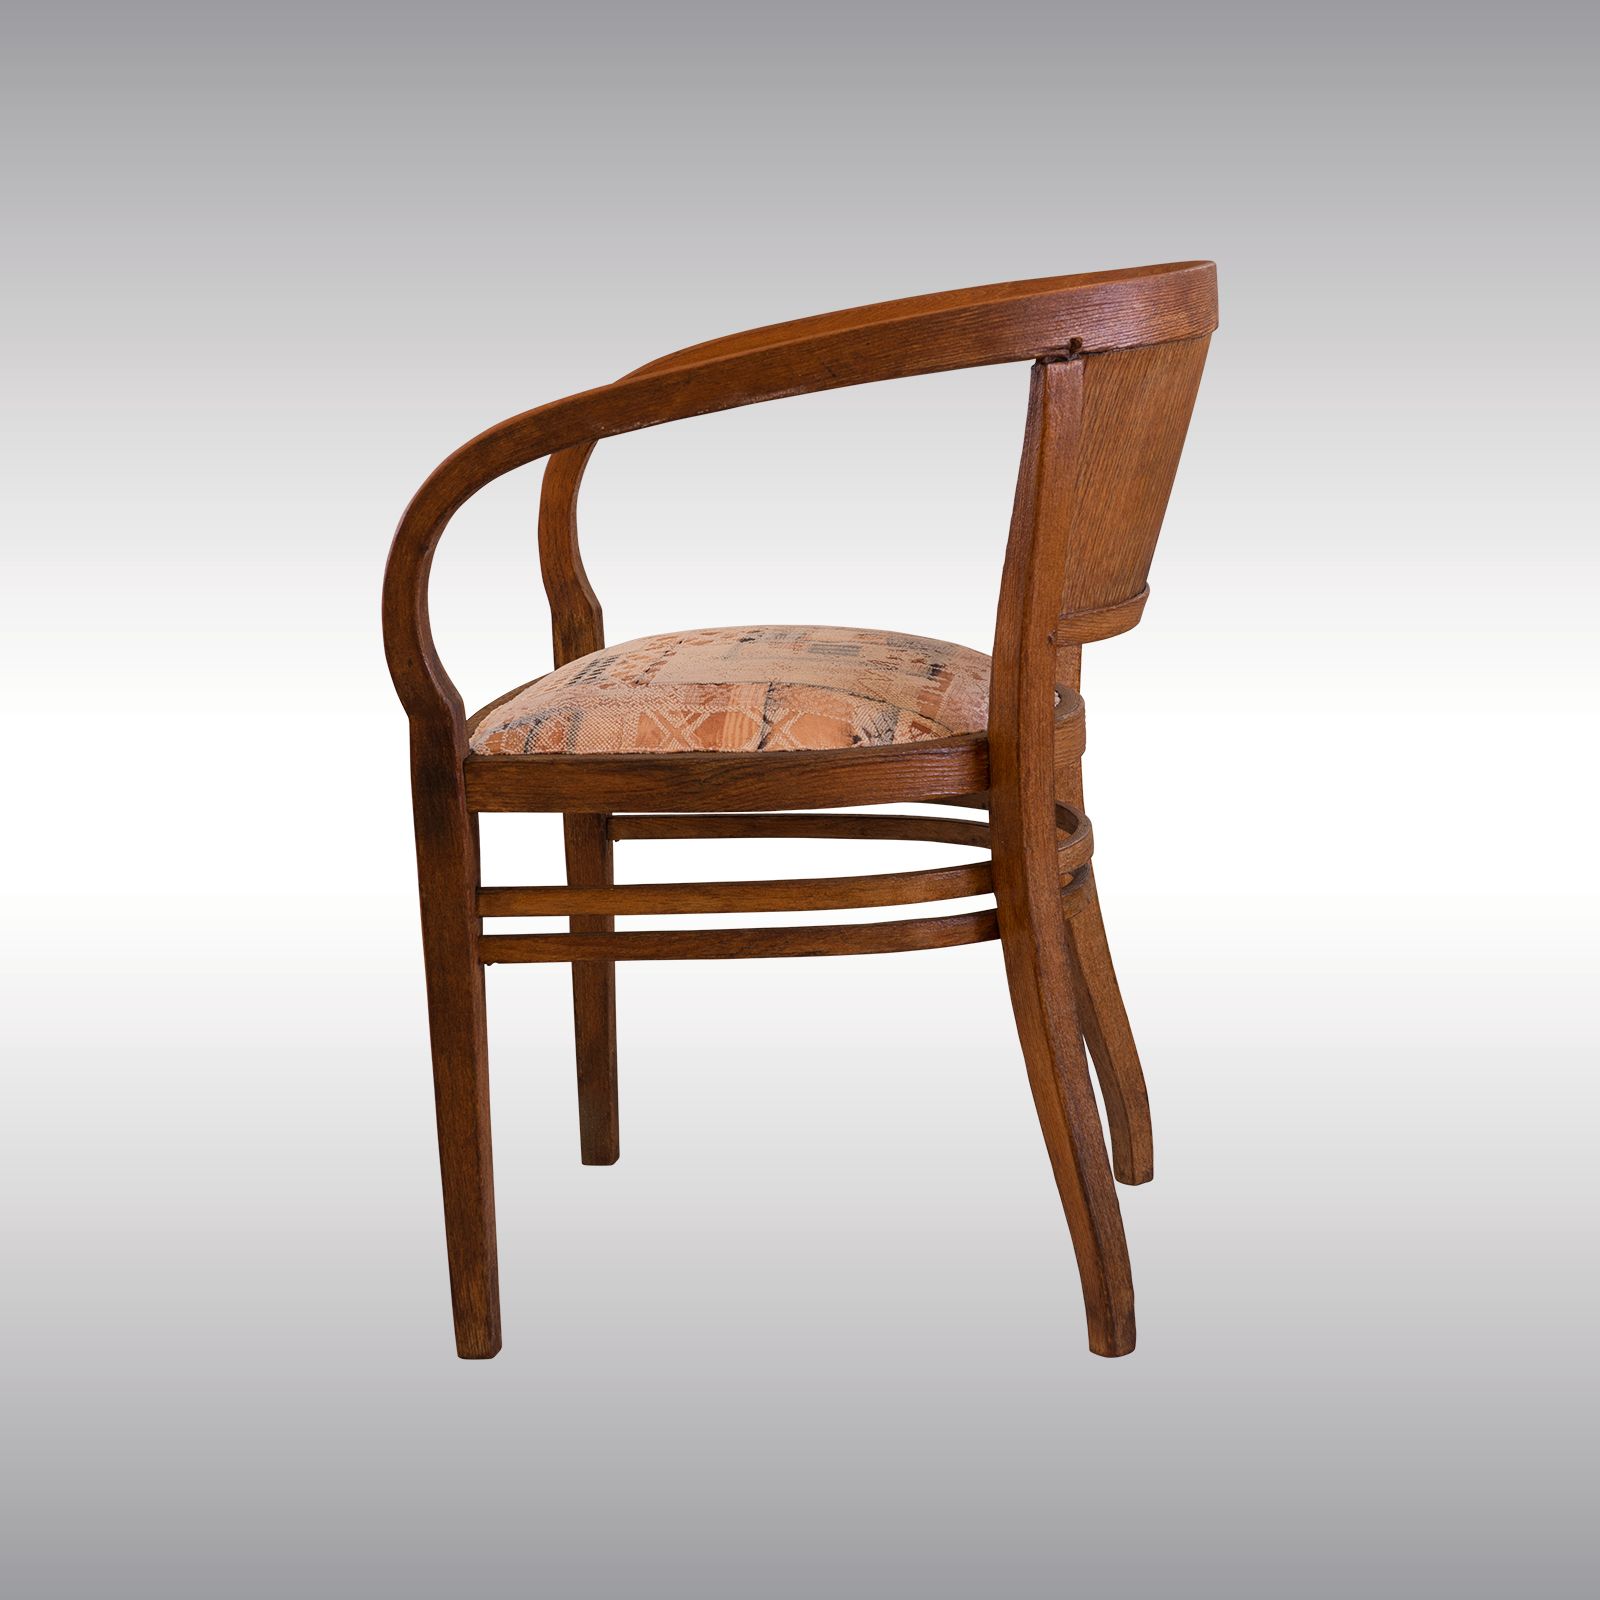 WOKA LAMPS VIENNA - OrderNr.: 80074|Besonders seltener und schöner Otto Wagner Sessel von Thonet 1901 - Design: Otto Wagner